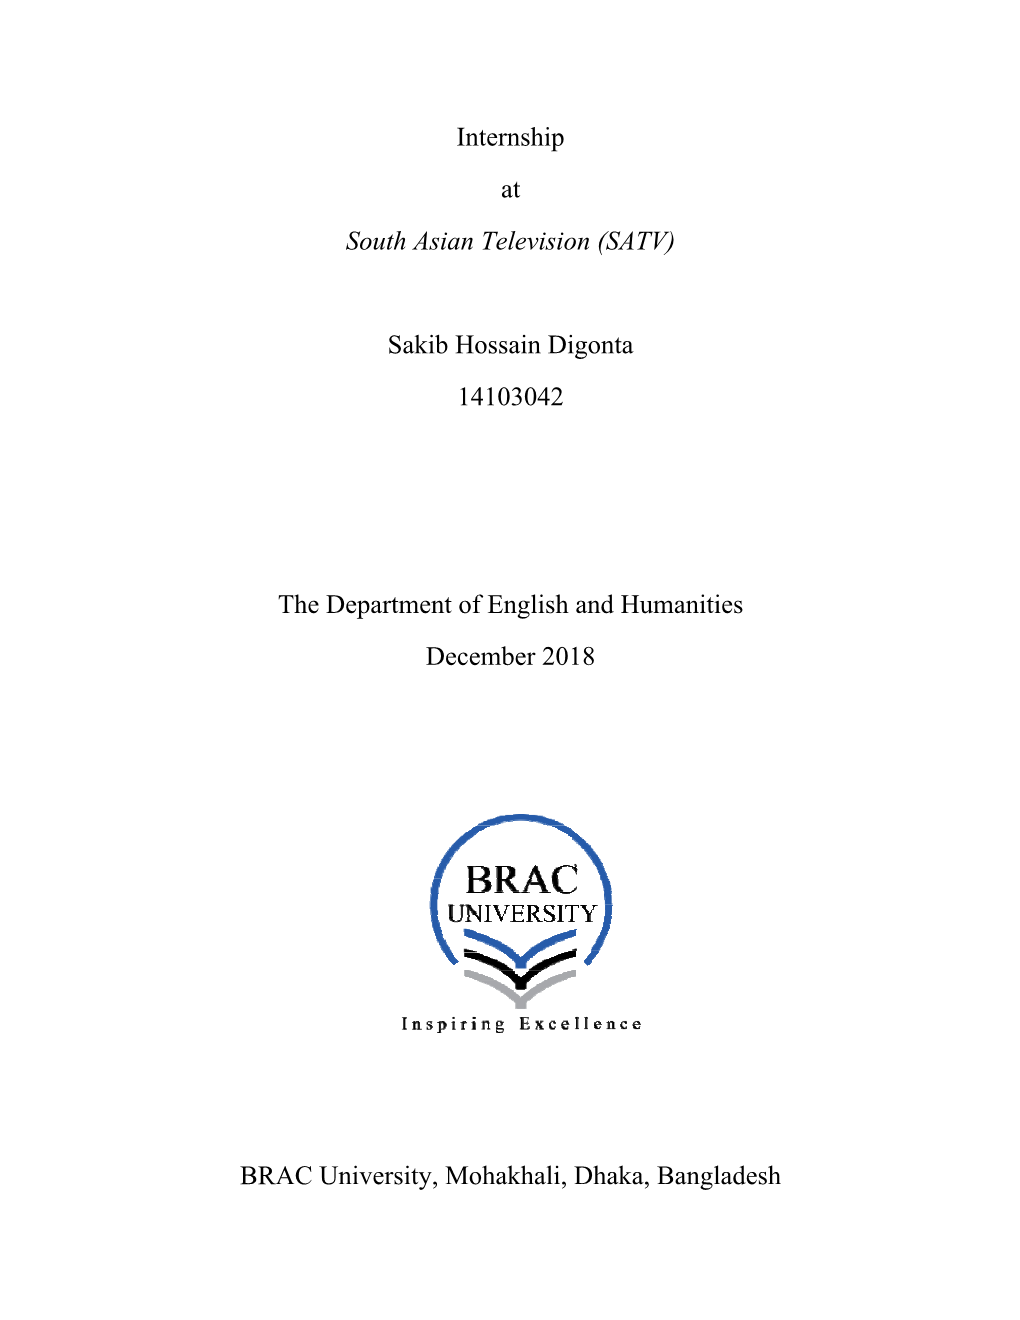 Internship at South Asian Television (SATV) Sakib Hossain Digonta